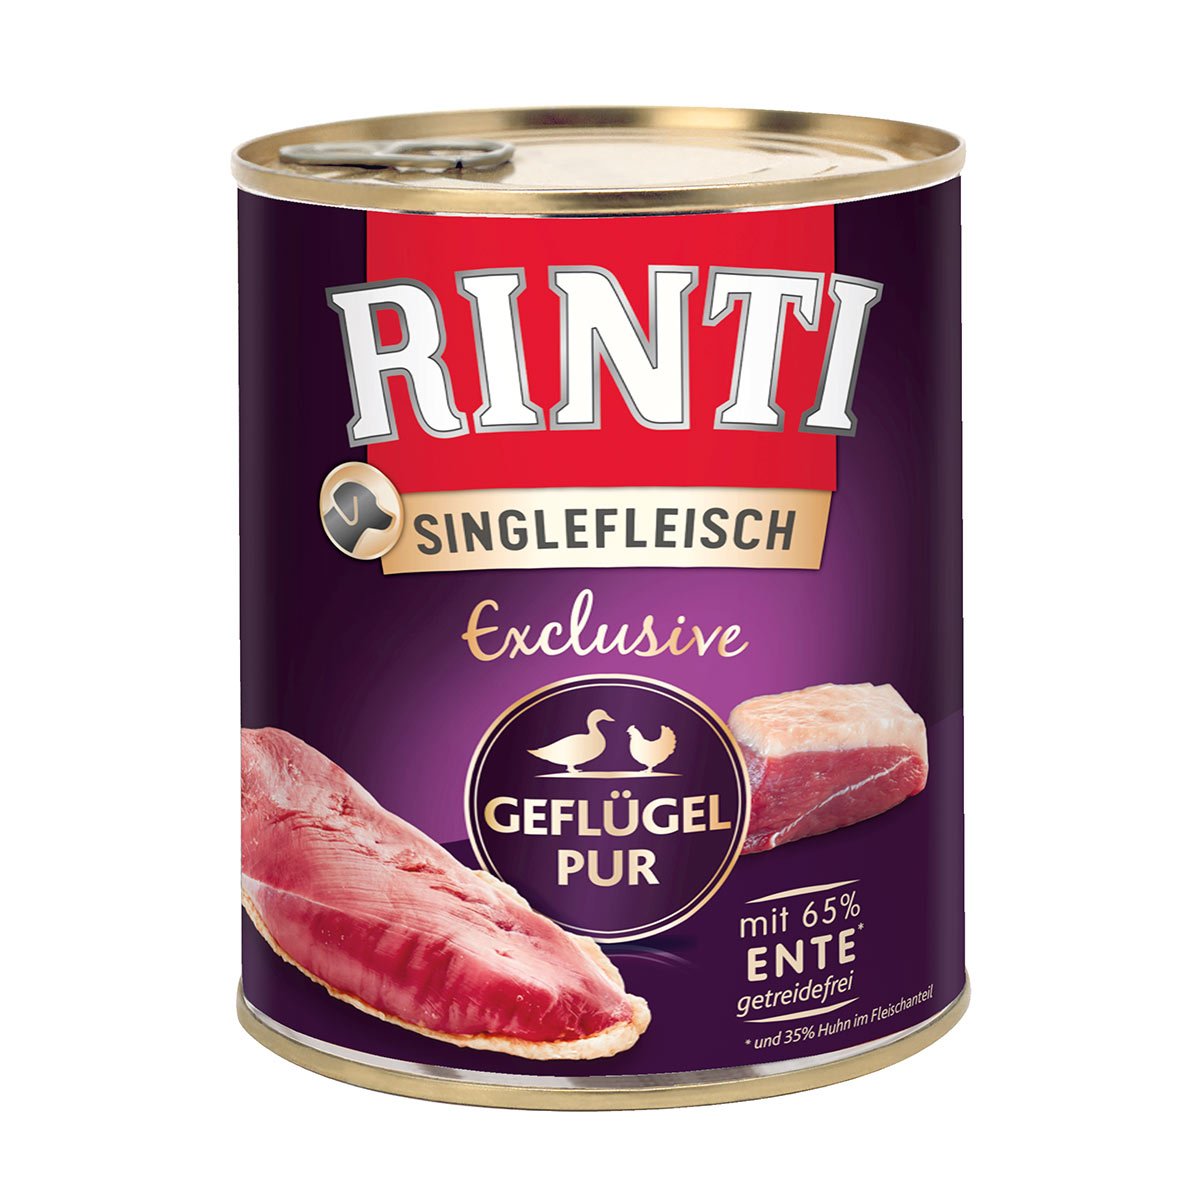 Rinti Singlefleisch Exclusive Geflügel pur 6x800g von Rinti